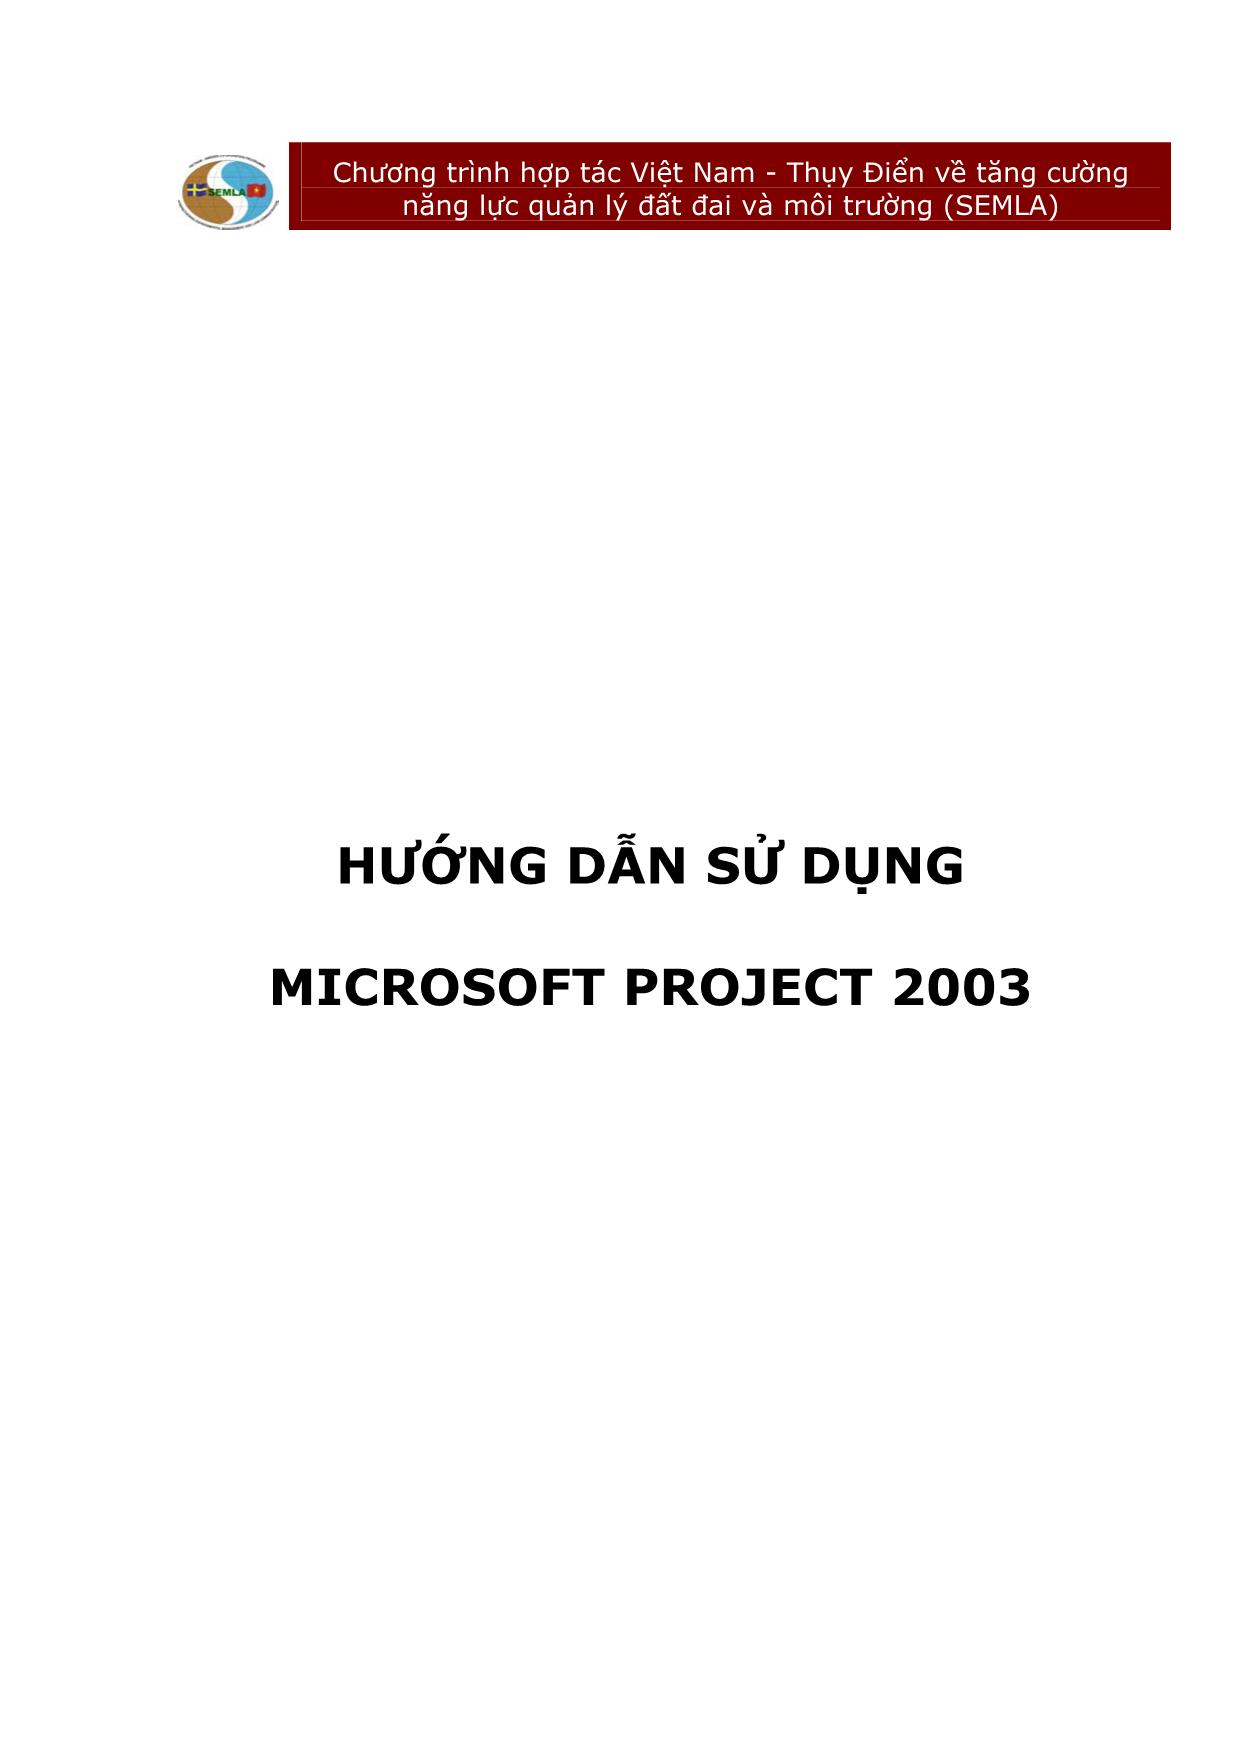 Hướng dẫn sử dụng microsoft project 2003 trang 1